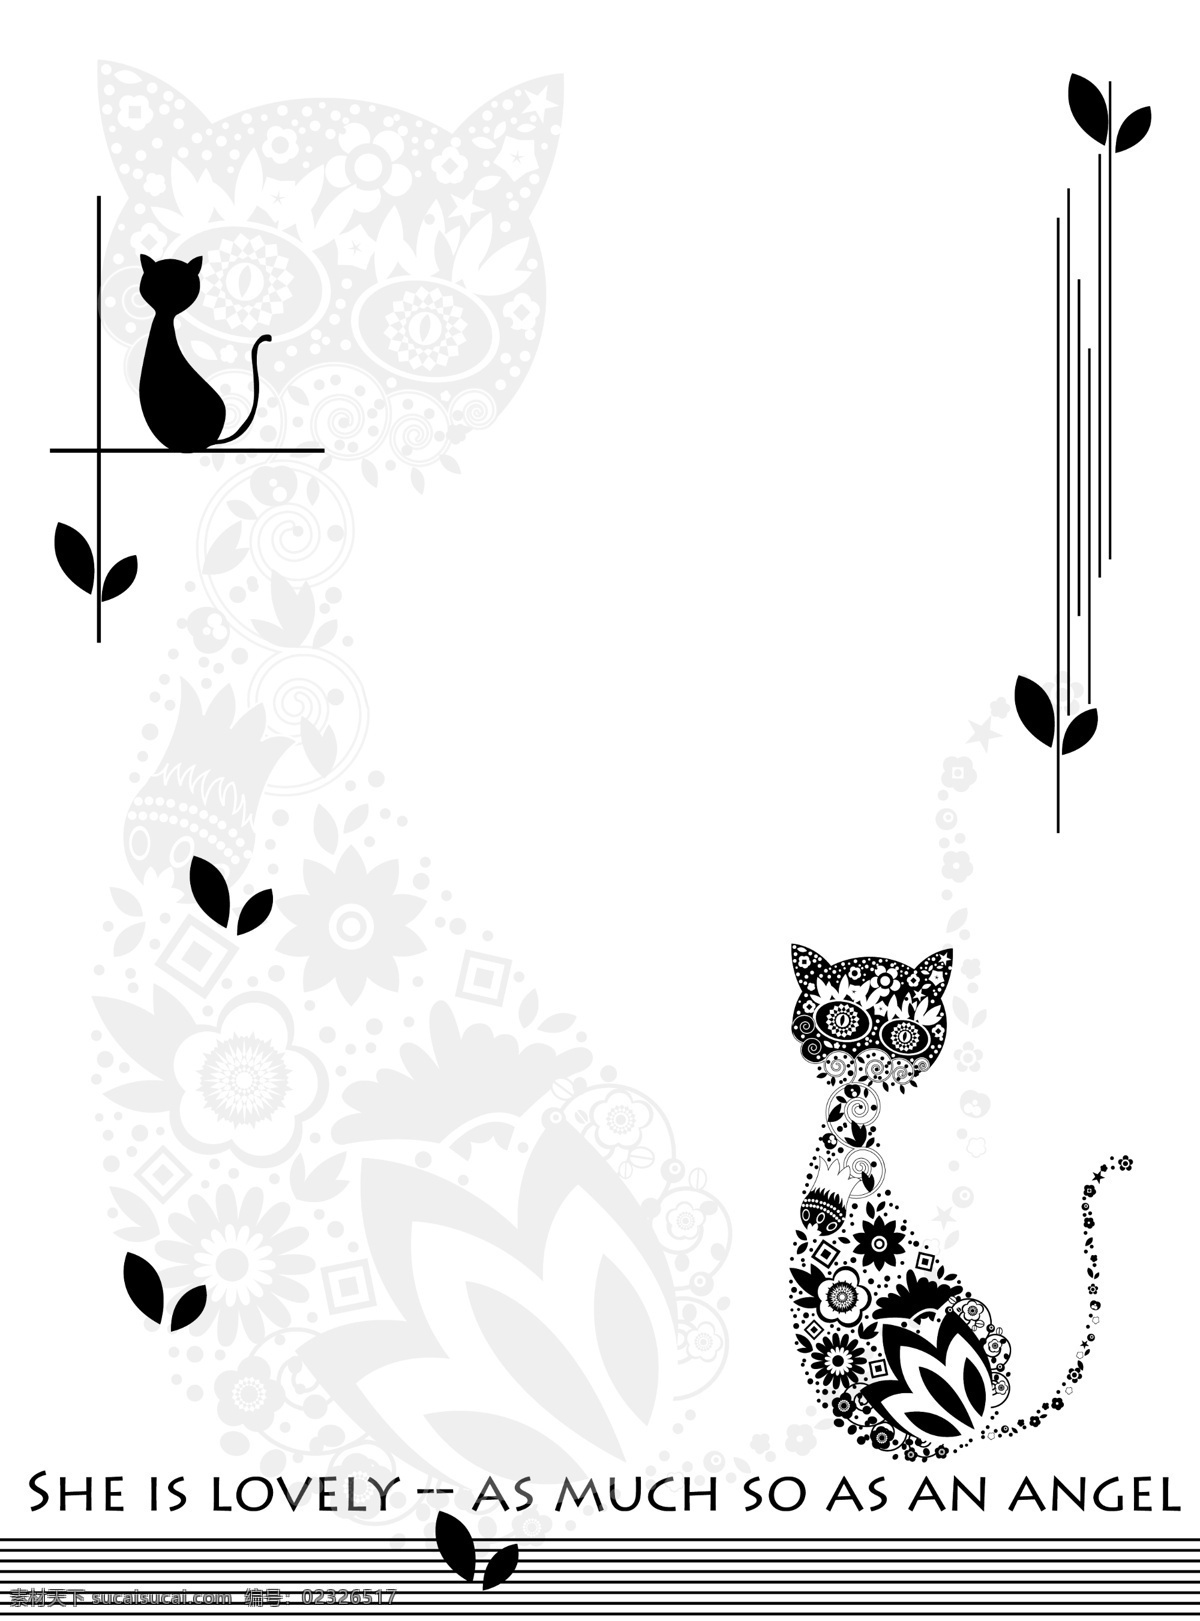 猫之爱 黑 白 猫 英文 底纹猫 小叶 移门图案 底纹边框